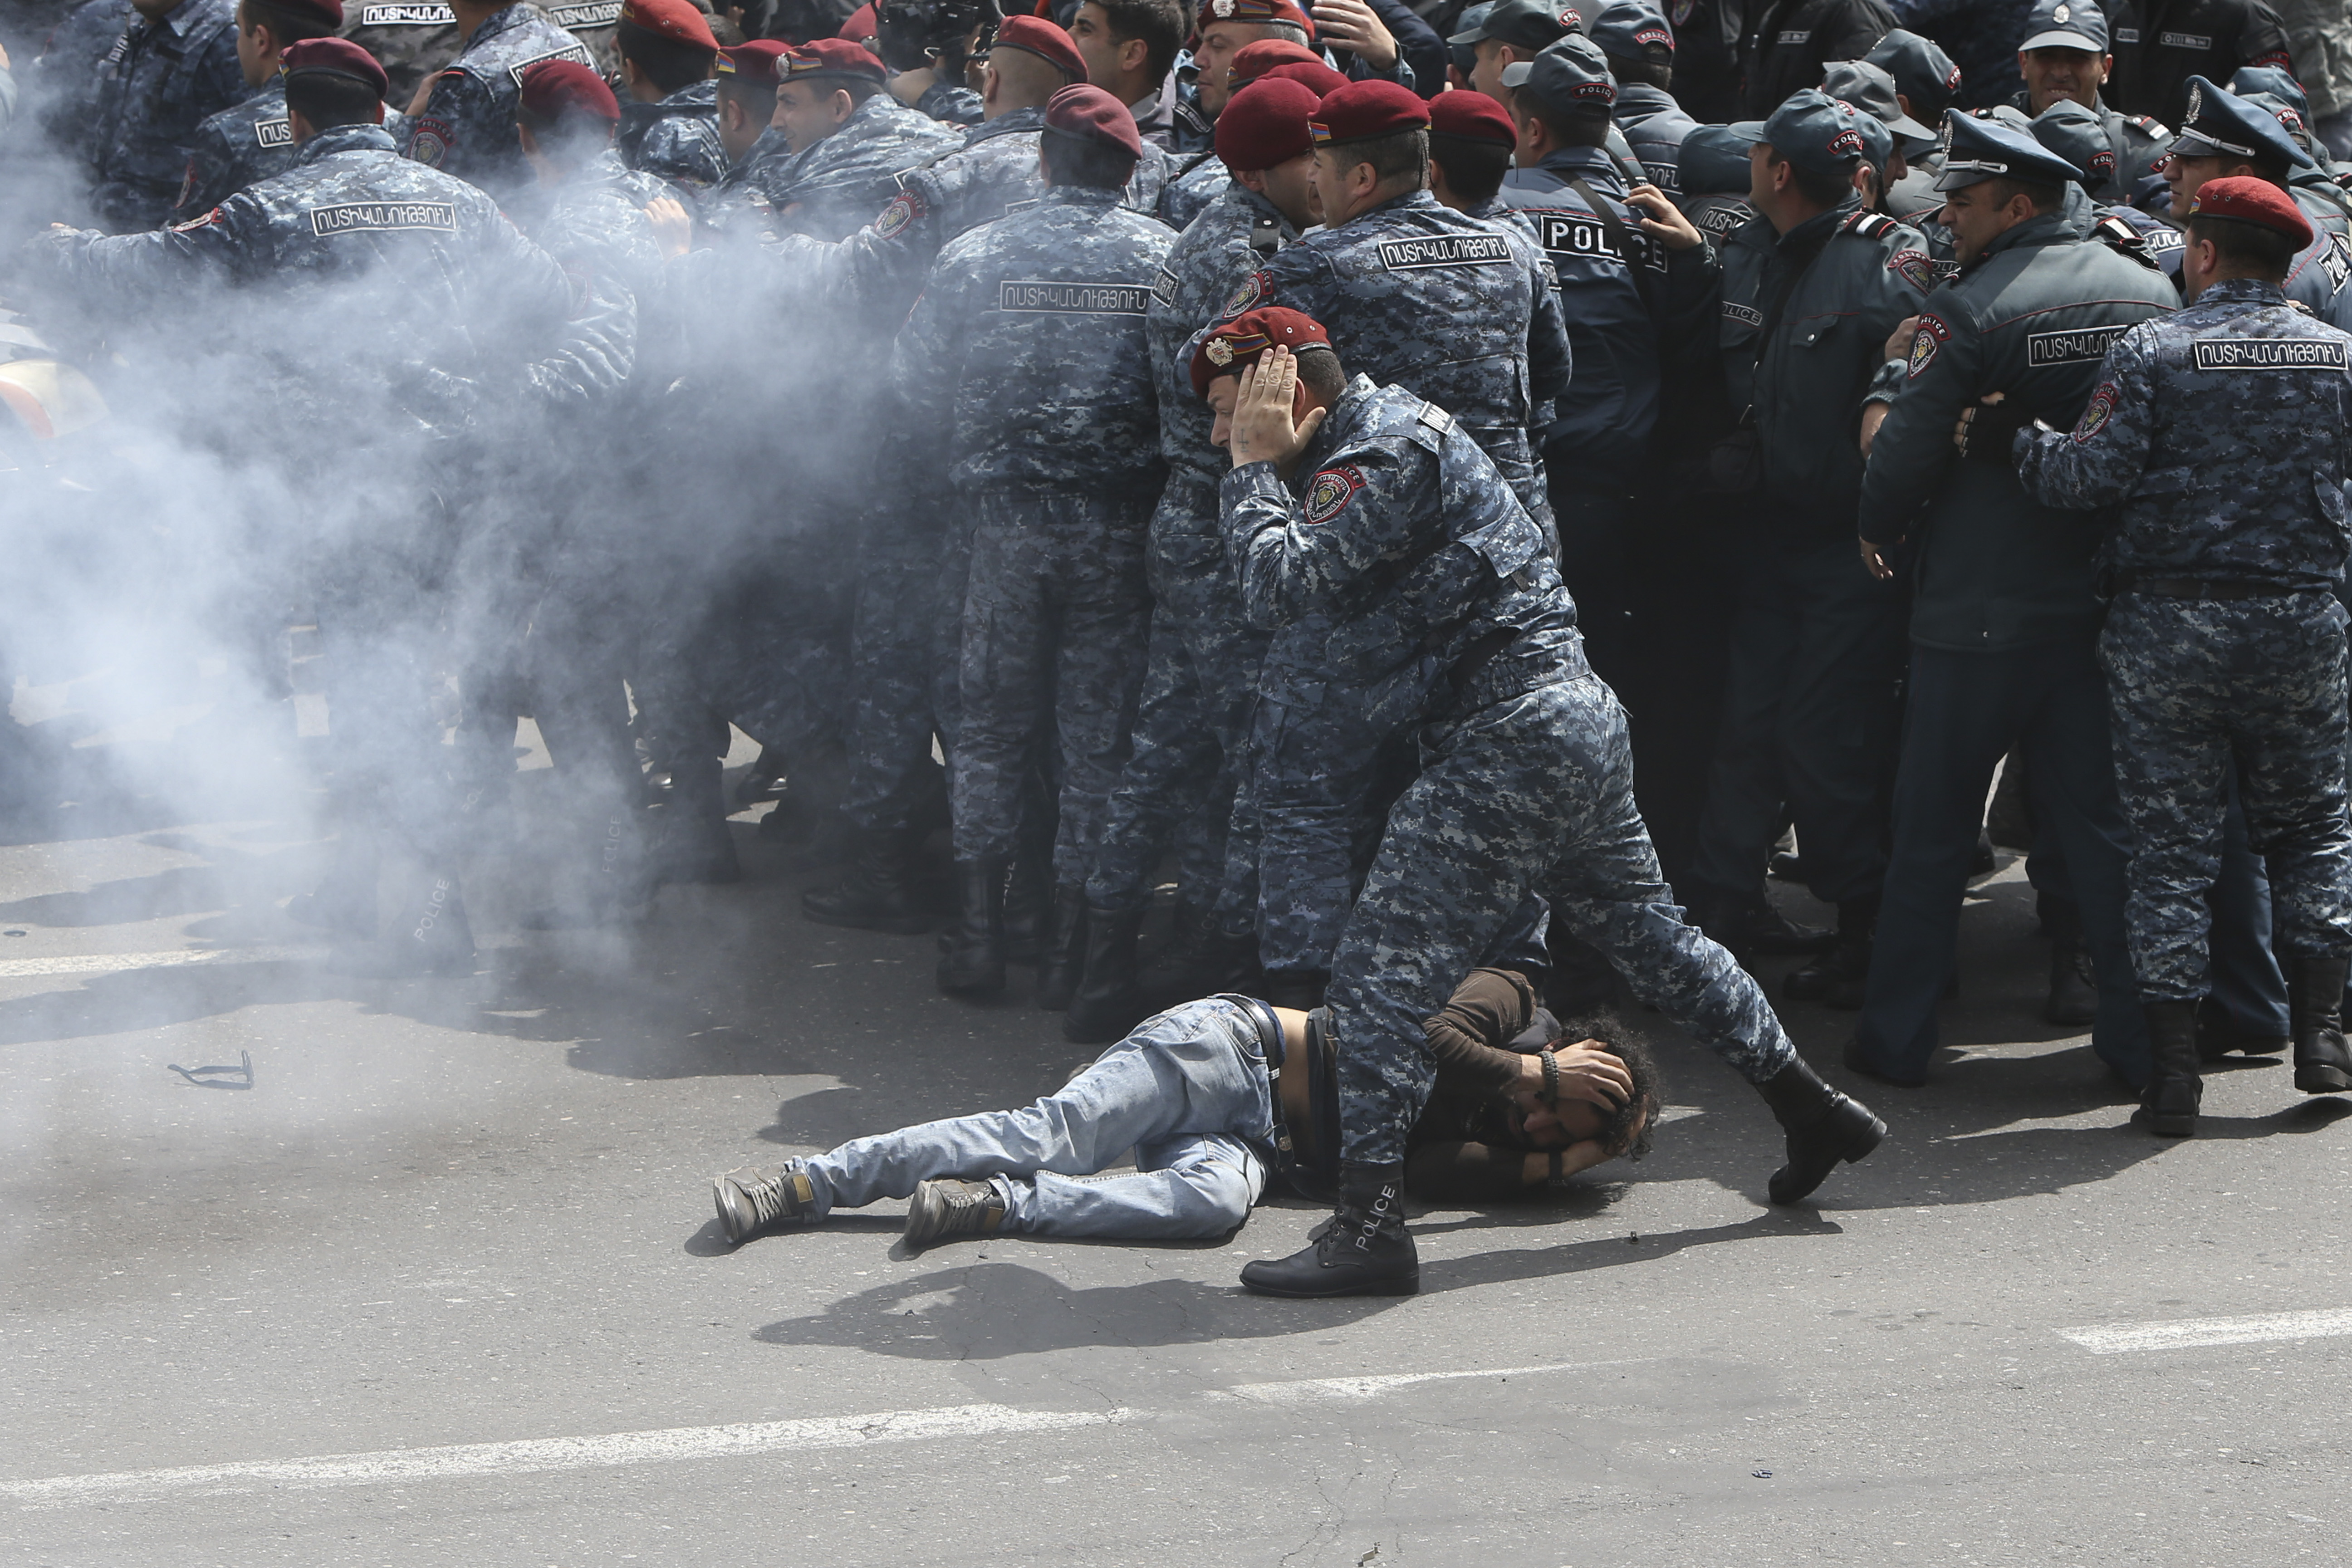 سقوط متظاهر فى أرمينيا بسبب الغاز المسيل للدموع